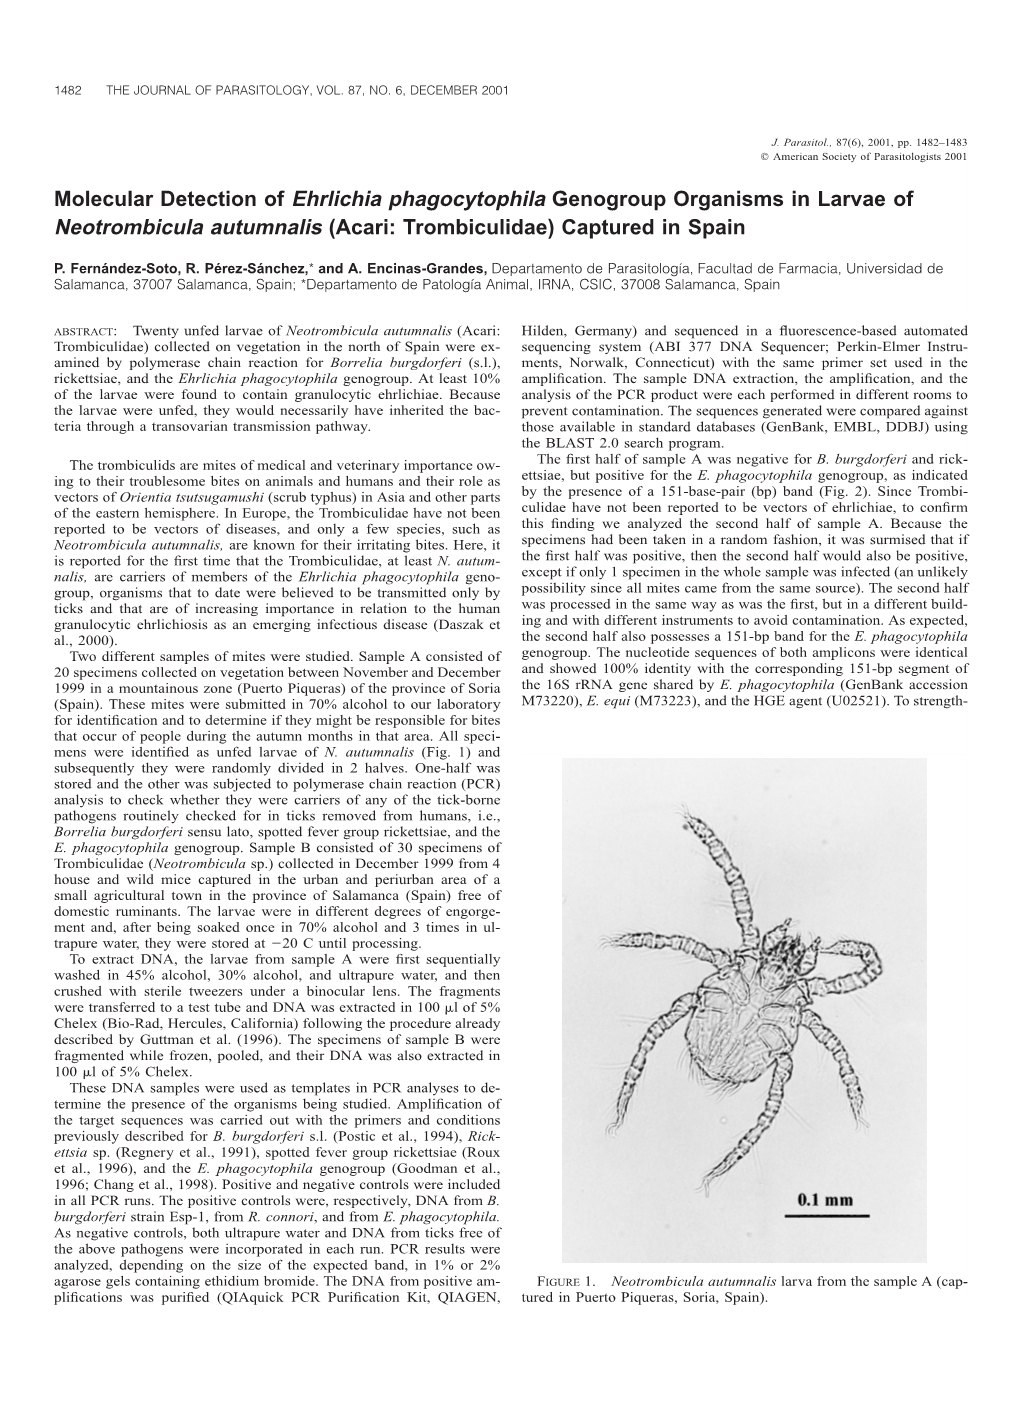 Molecular Detection of Ehrlichia Phagocytophila Genogroup Organisms in Larvae of Neotrombicula Autumnalis (Acari: Trombiculidae) Captured in Spain